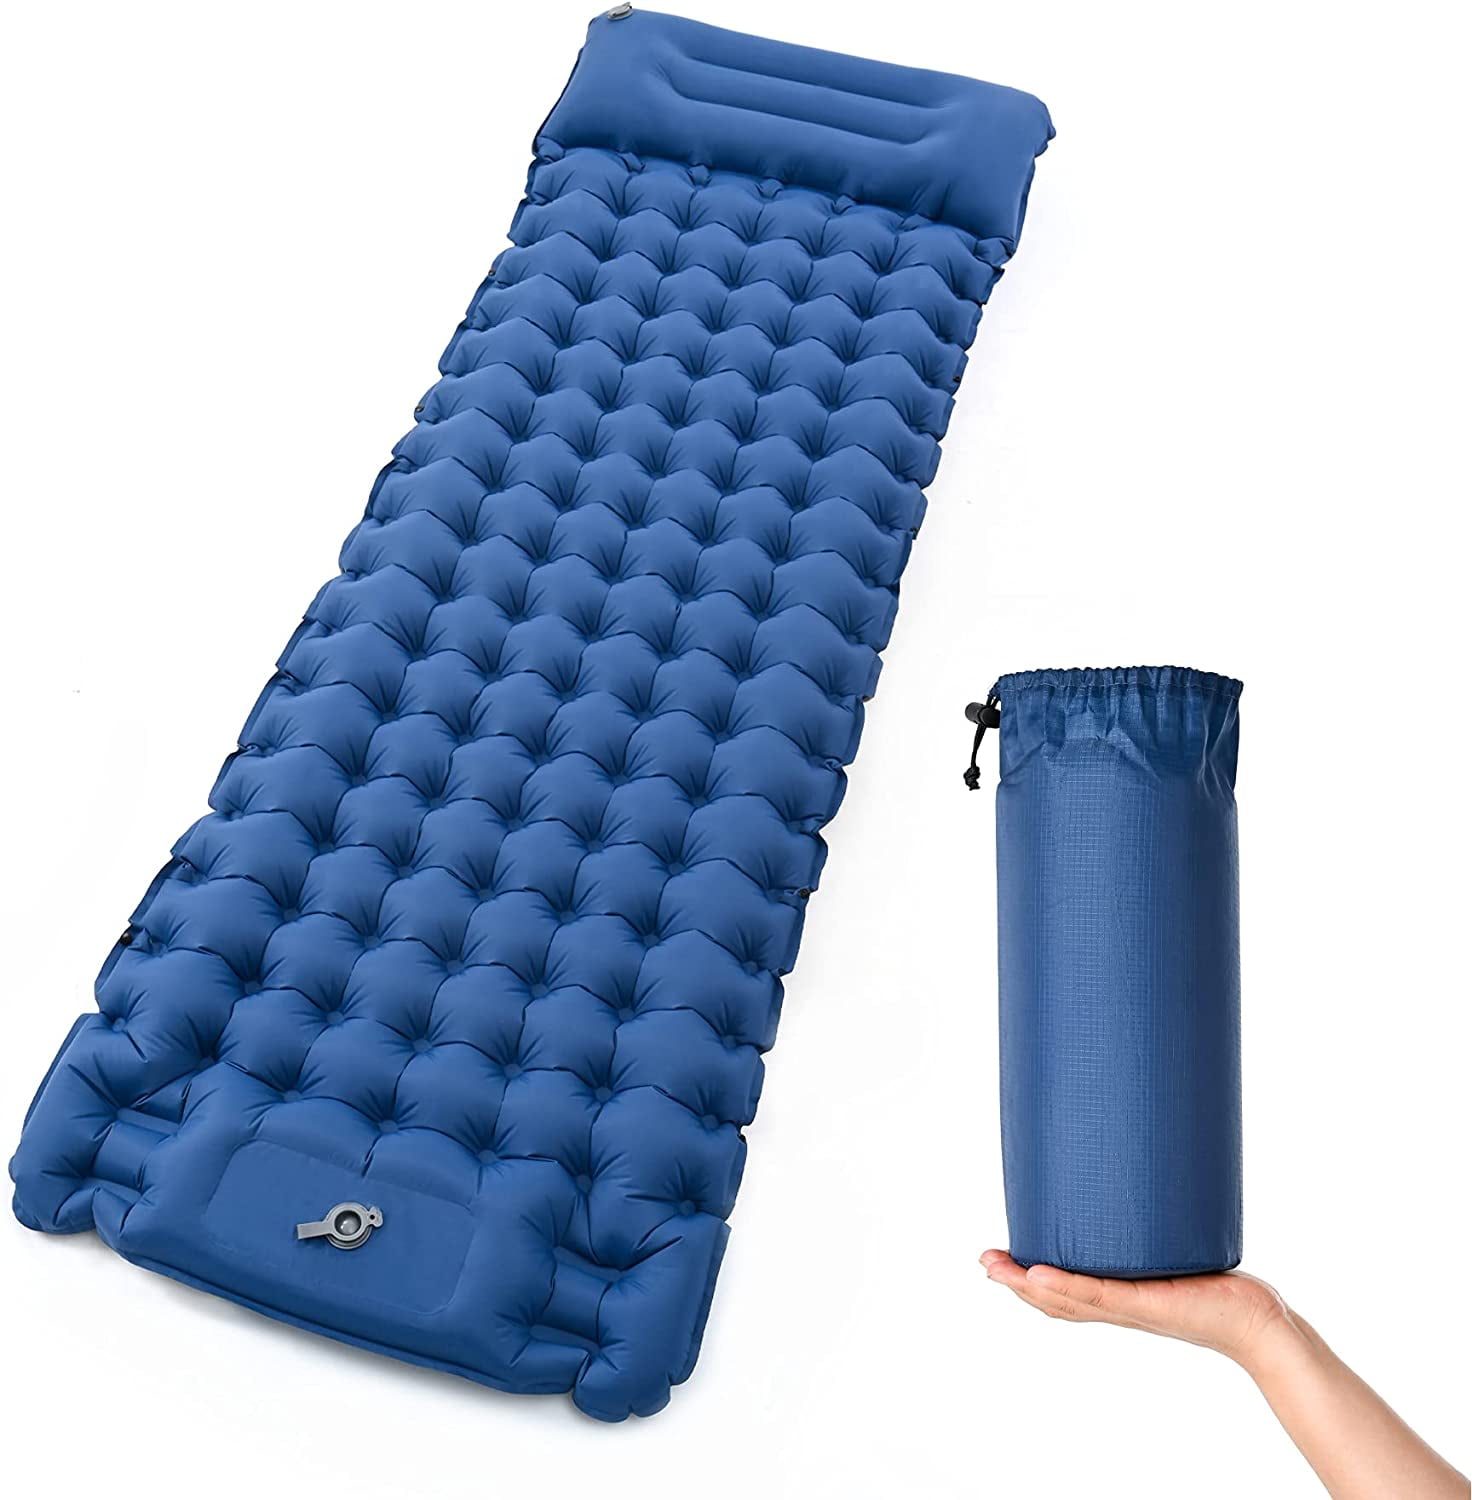 Inflatable Camping Mat Ultralight Lightweight Single Sleeping Mattress Pillow 